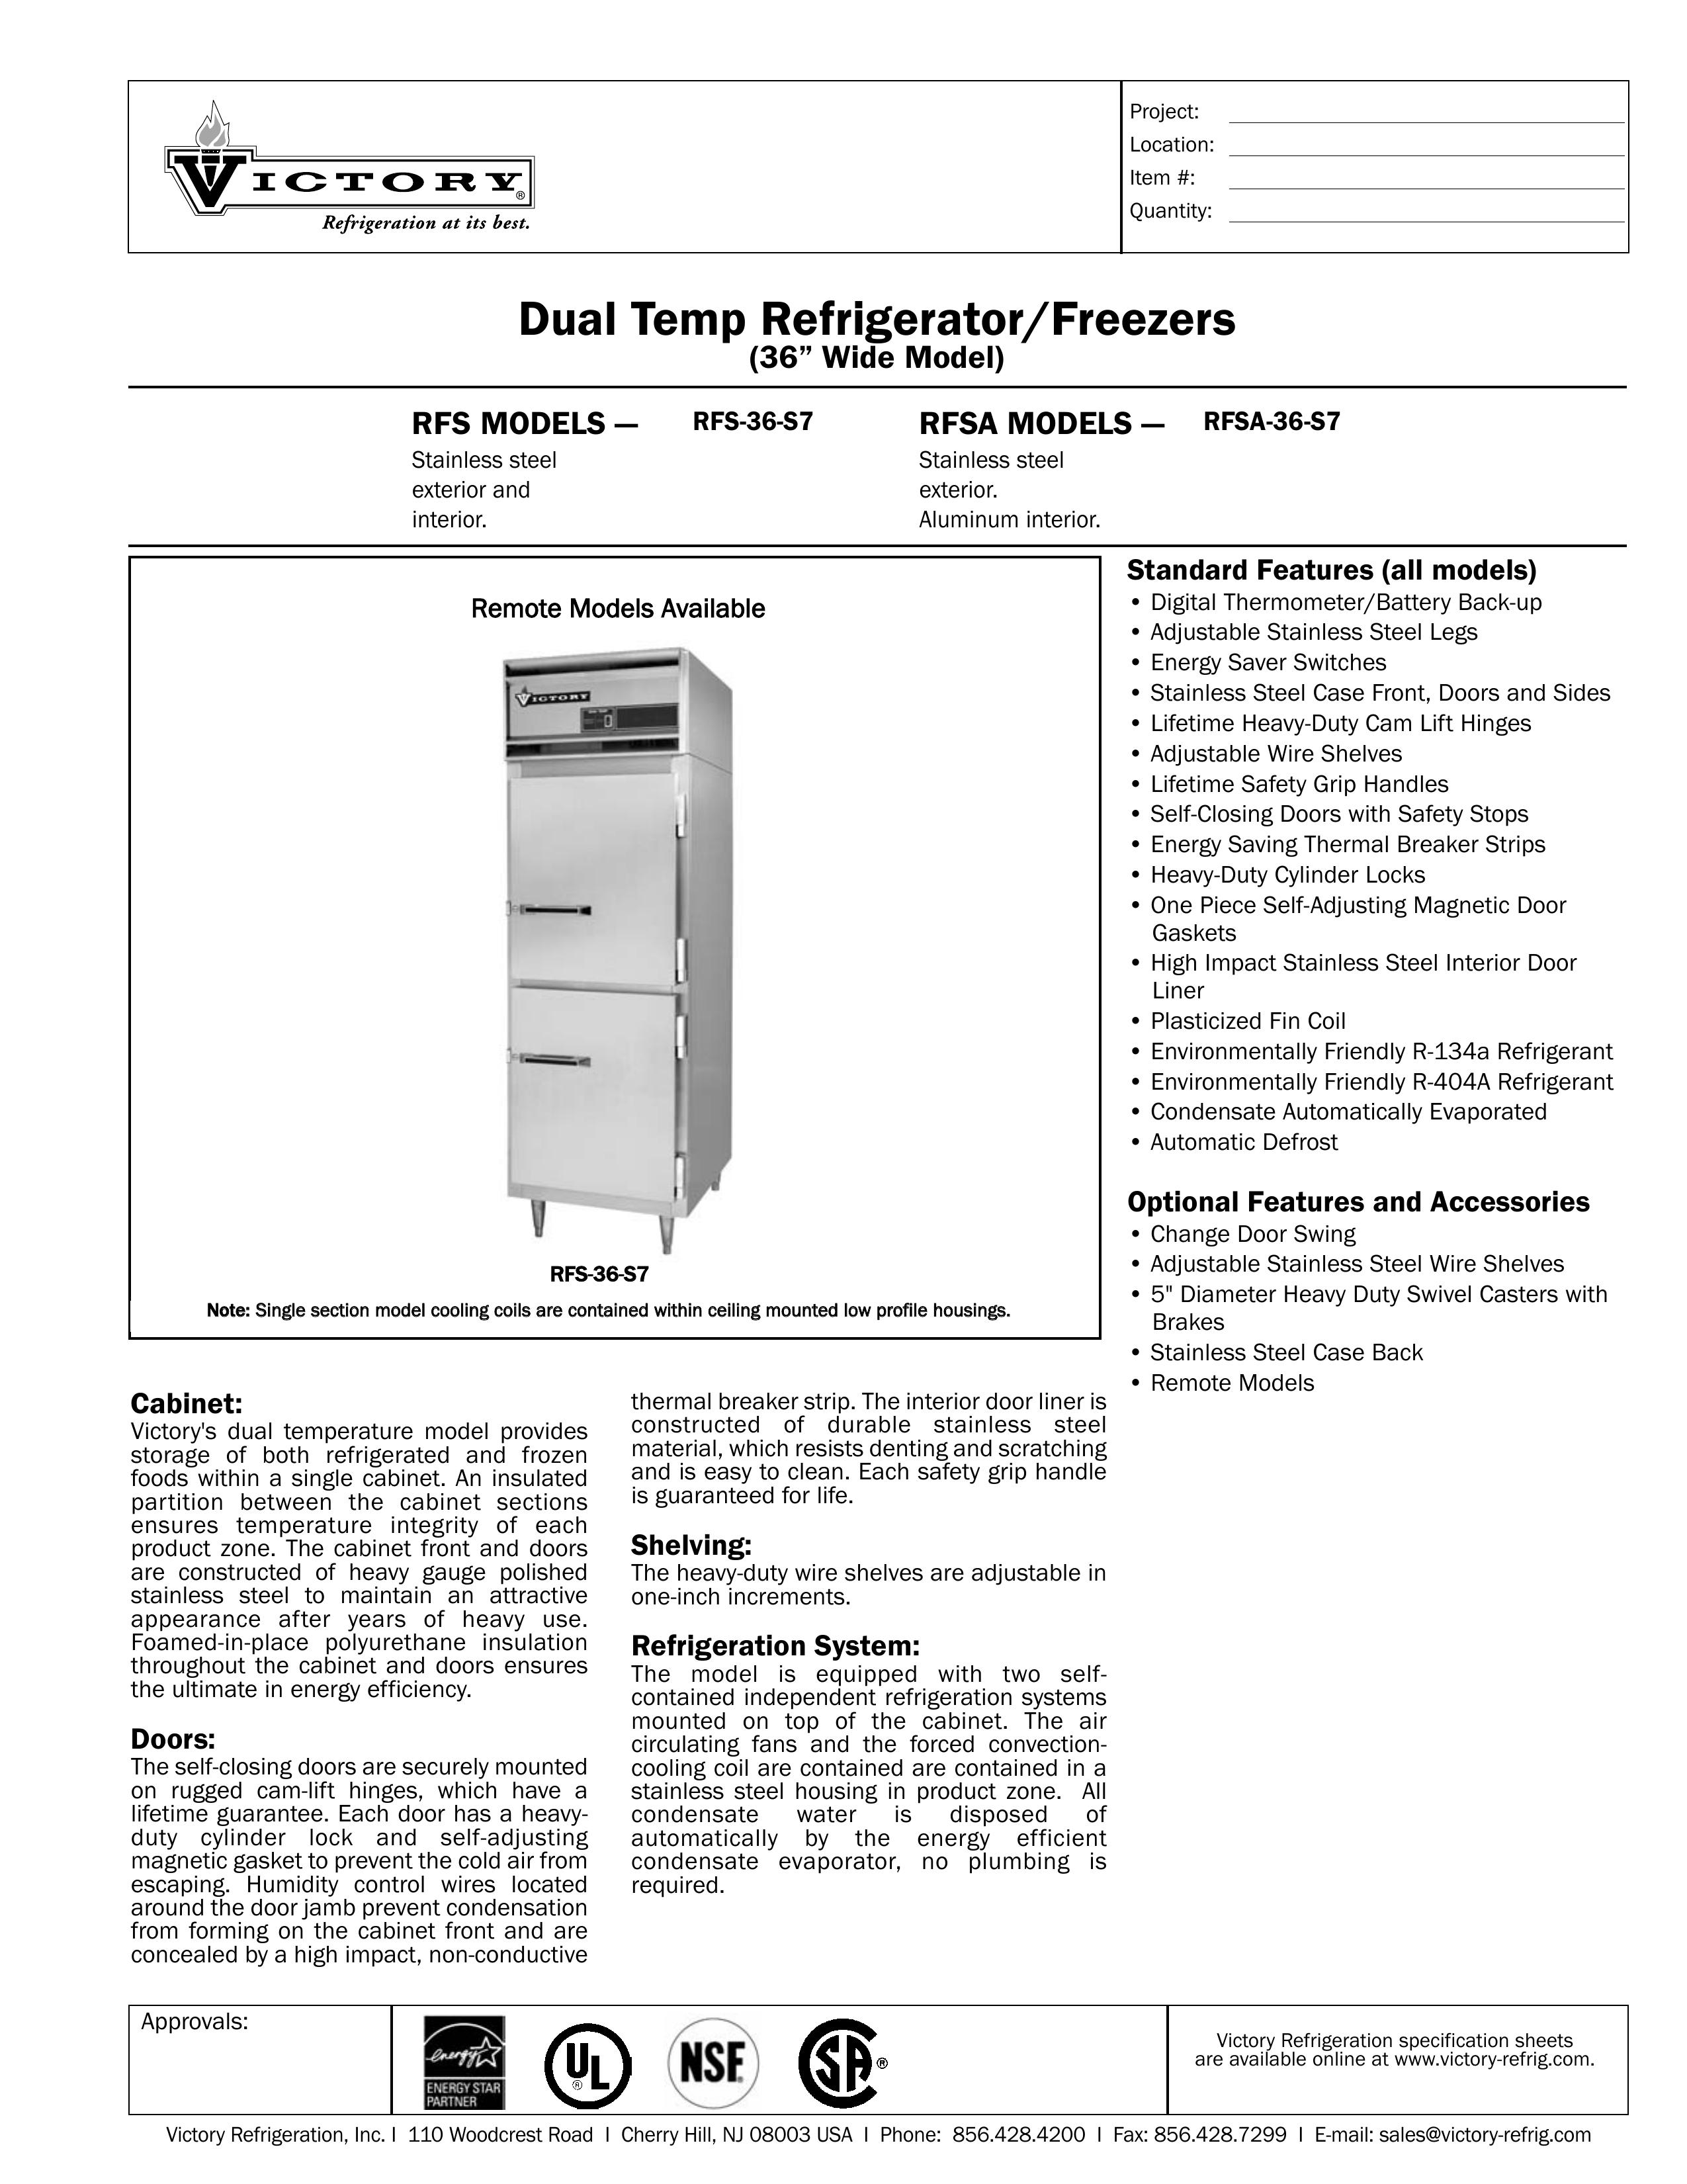 Victory Refrigeration RFS-36-S7 Refrigerator User Manual